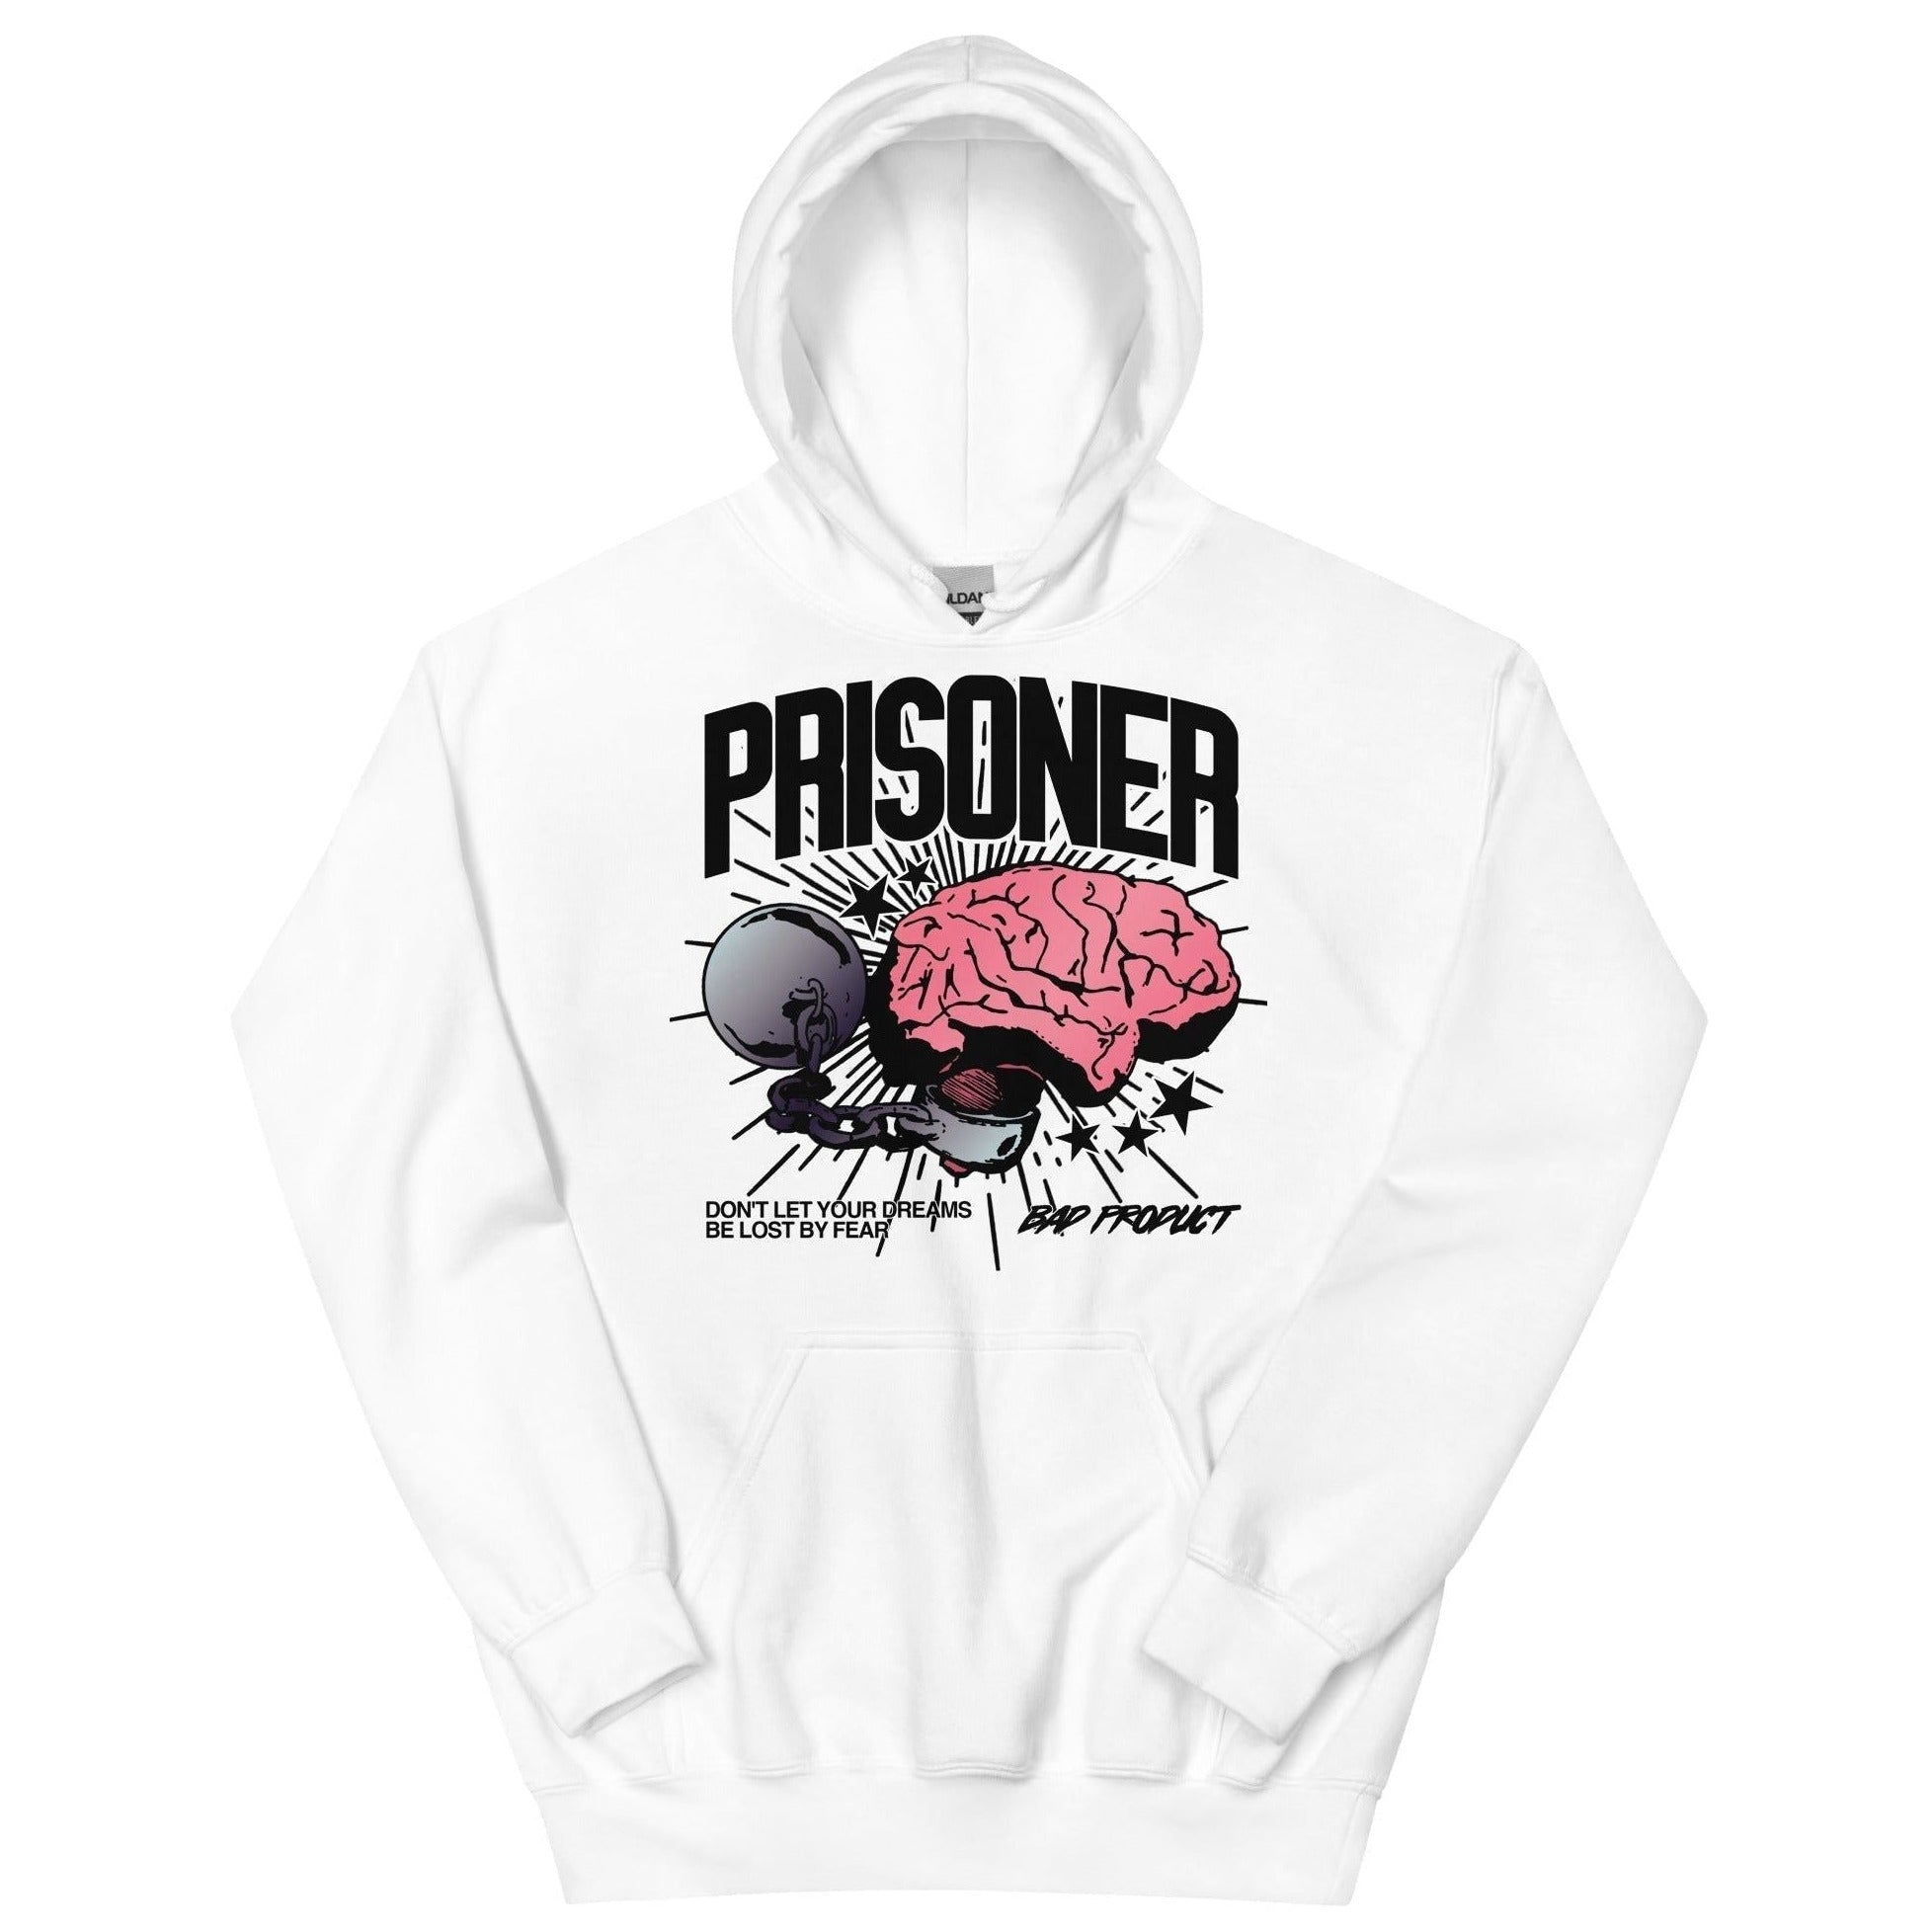 Prisoner Hoodie - Bad Product